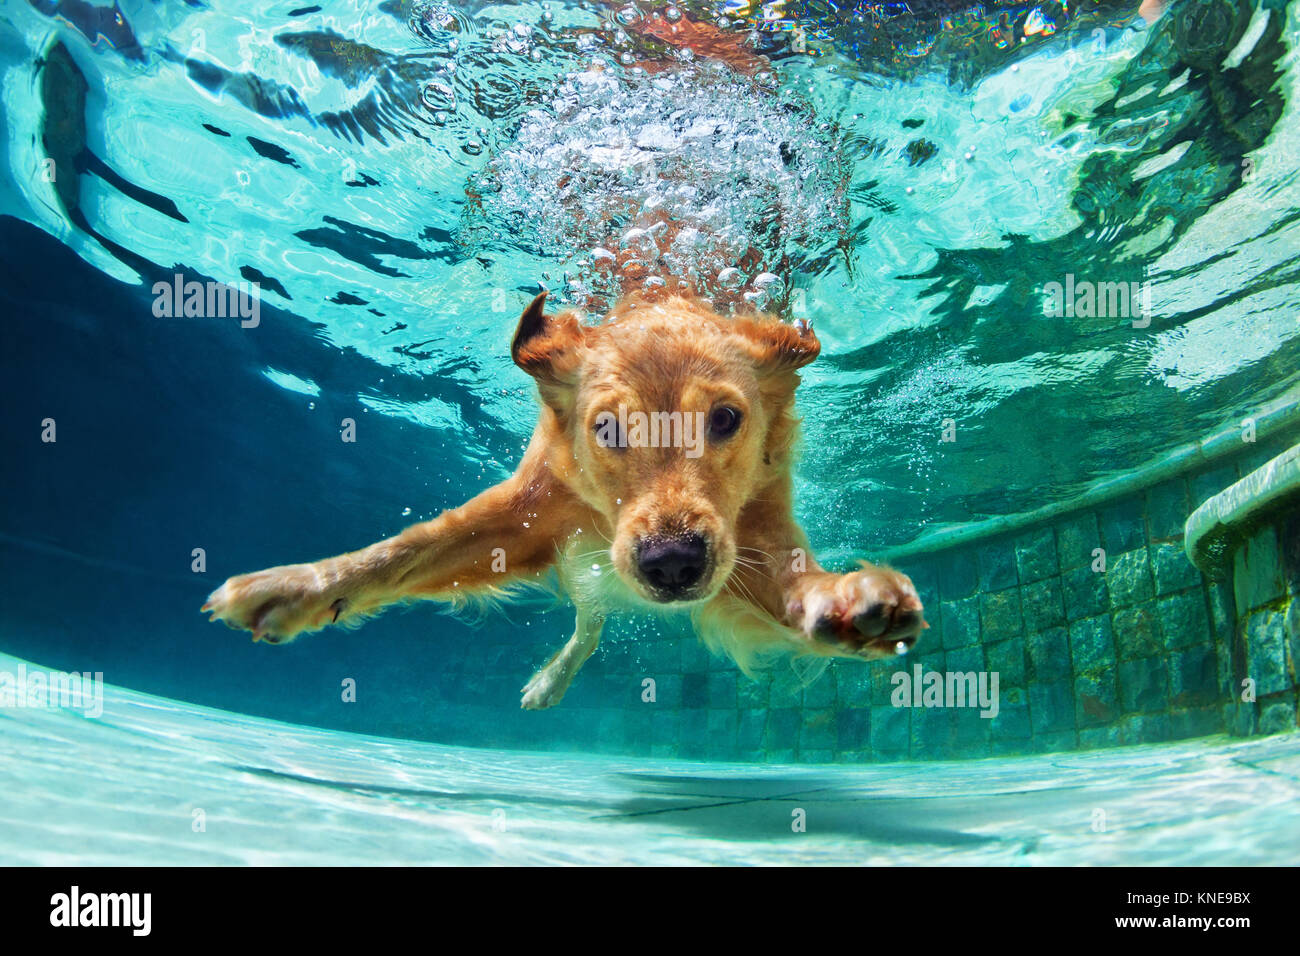 Underwater funny foto di golden labrador retriever puppy in piscina a giocare con divertimento - jumping, immersione profonda verso il basso. Giochi di allenamento con la famiglia animali domestici Foto Stock